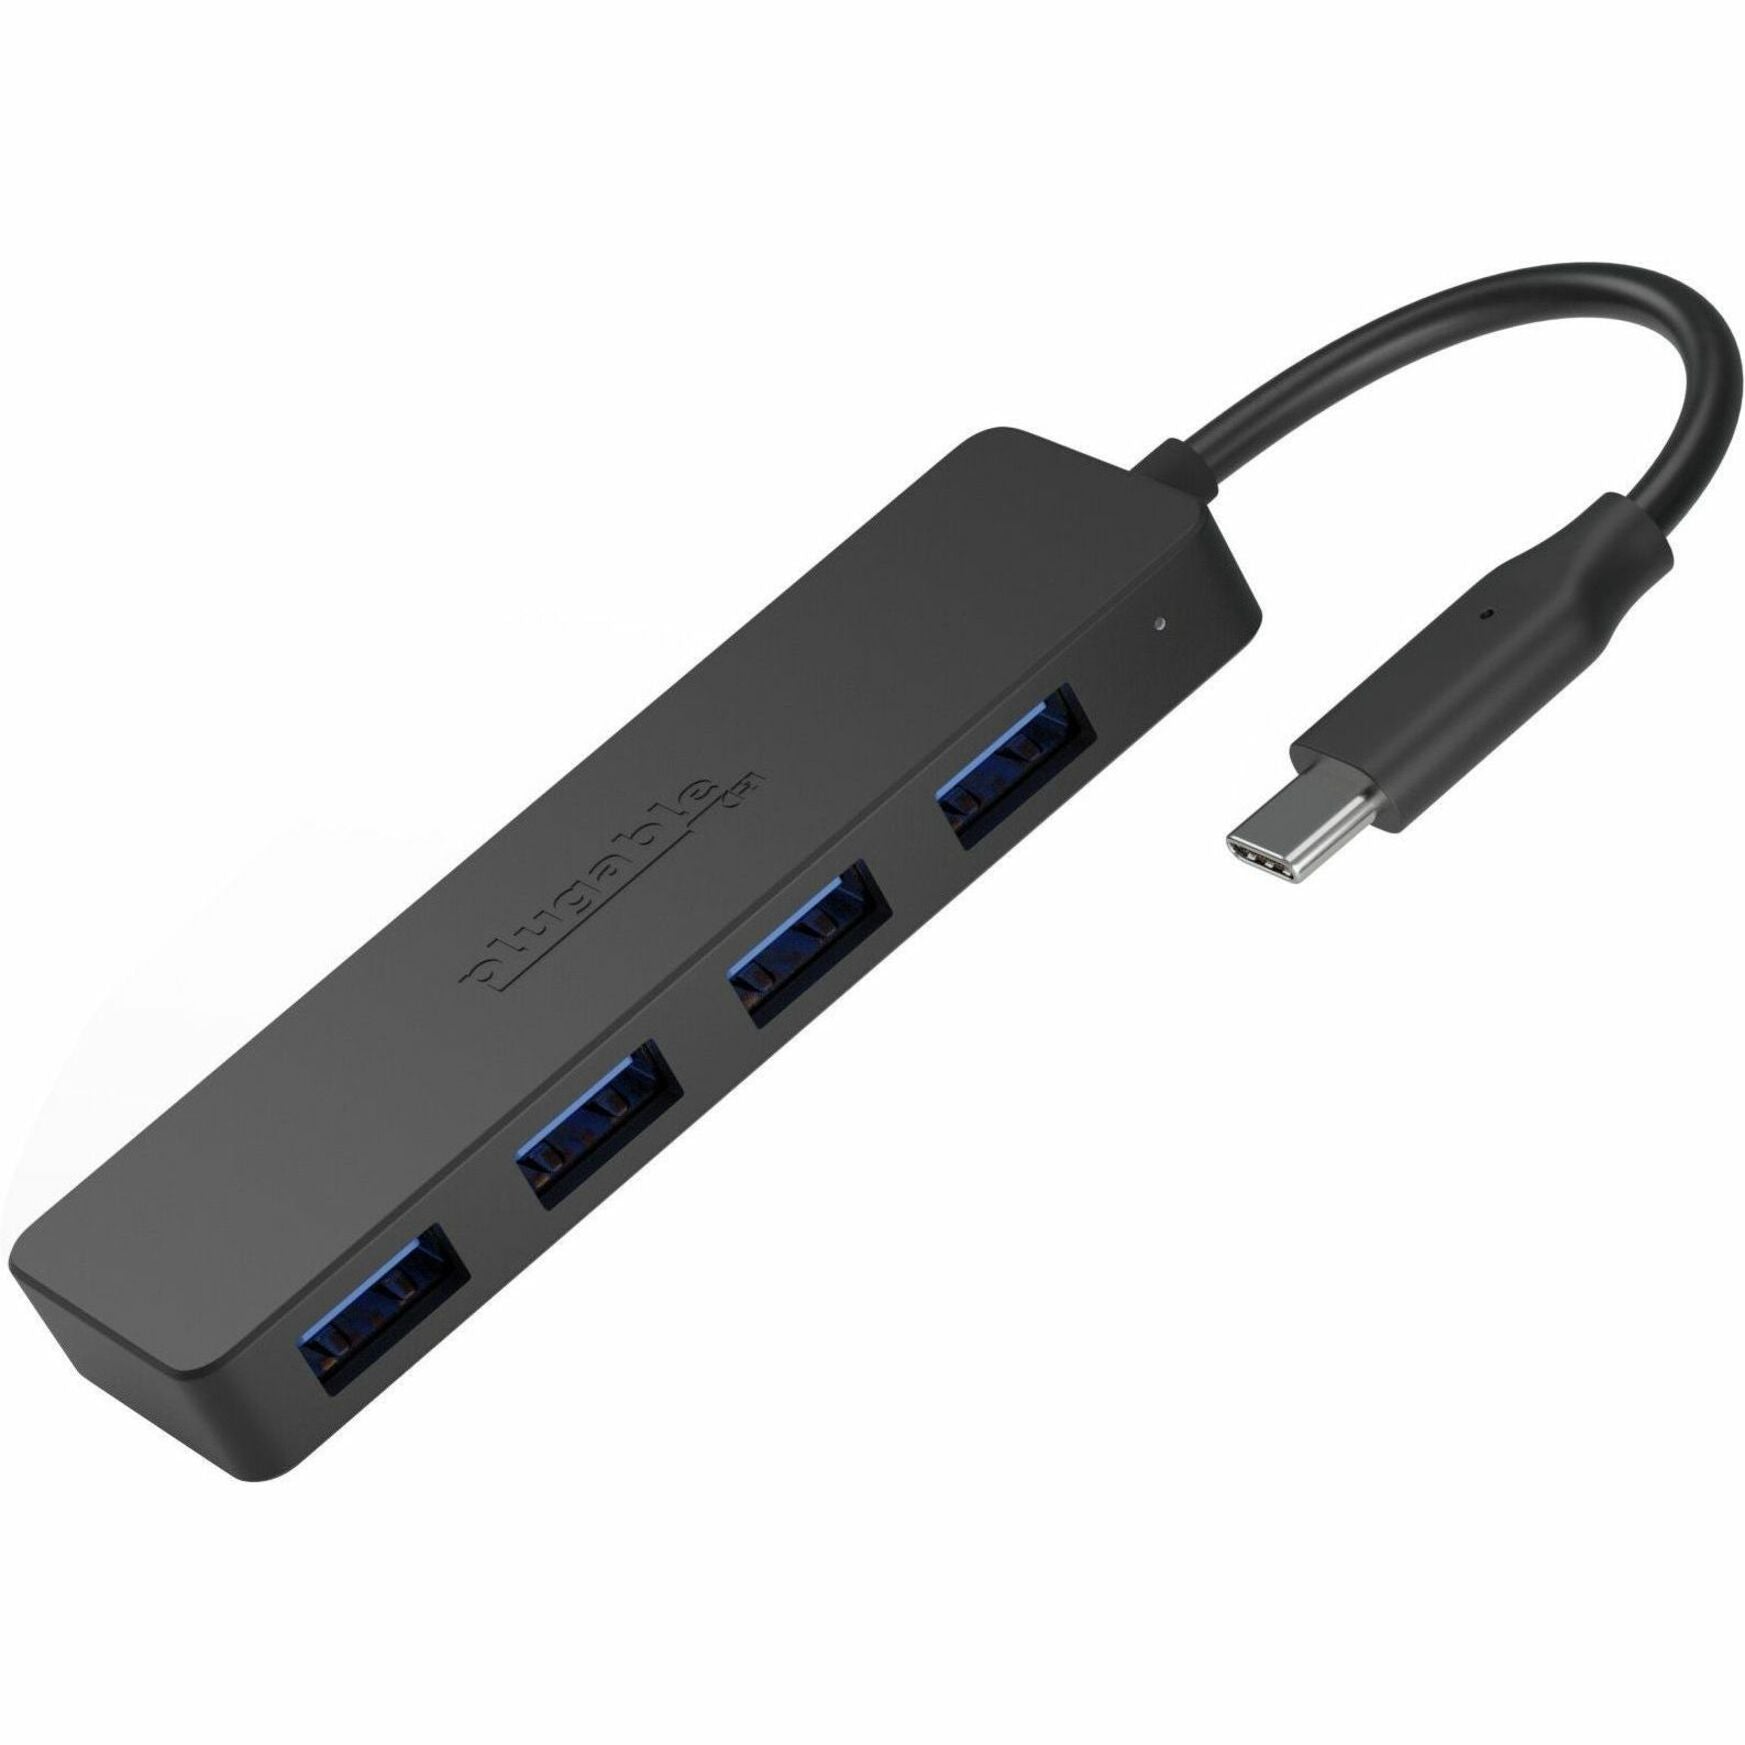 Hub USB Plugable USBC-HUB4A 4 Ports USB 3.0 Noir